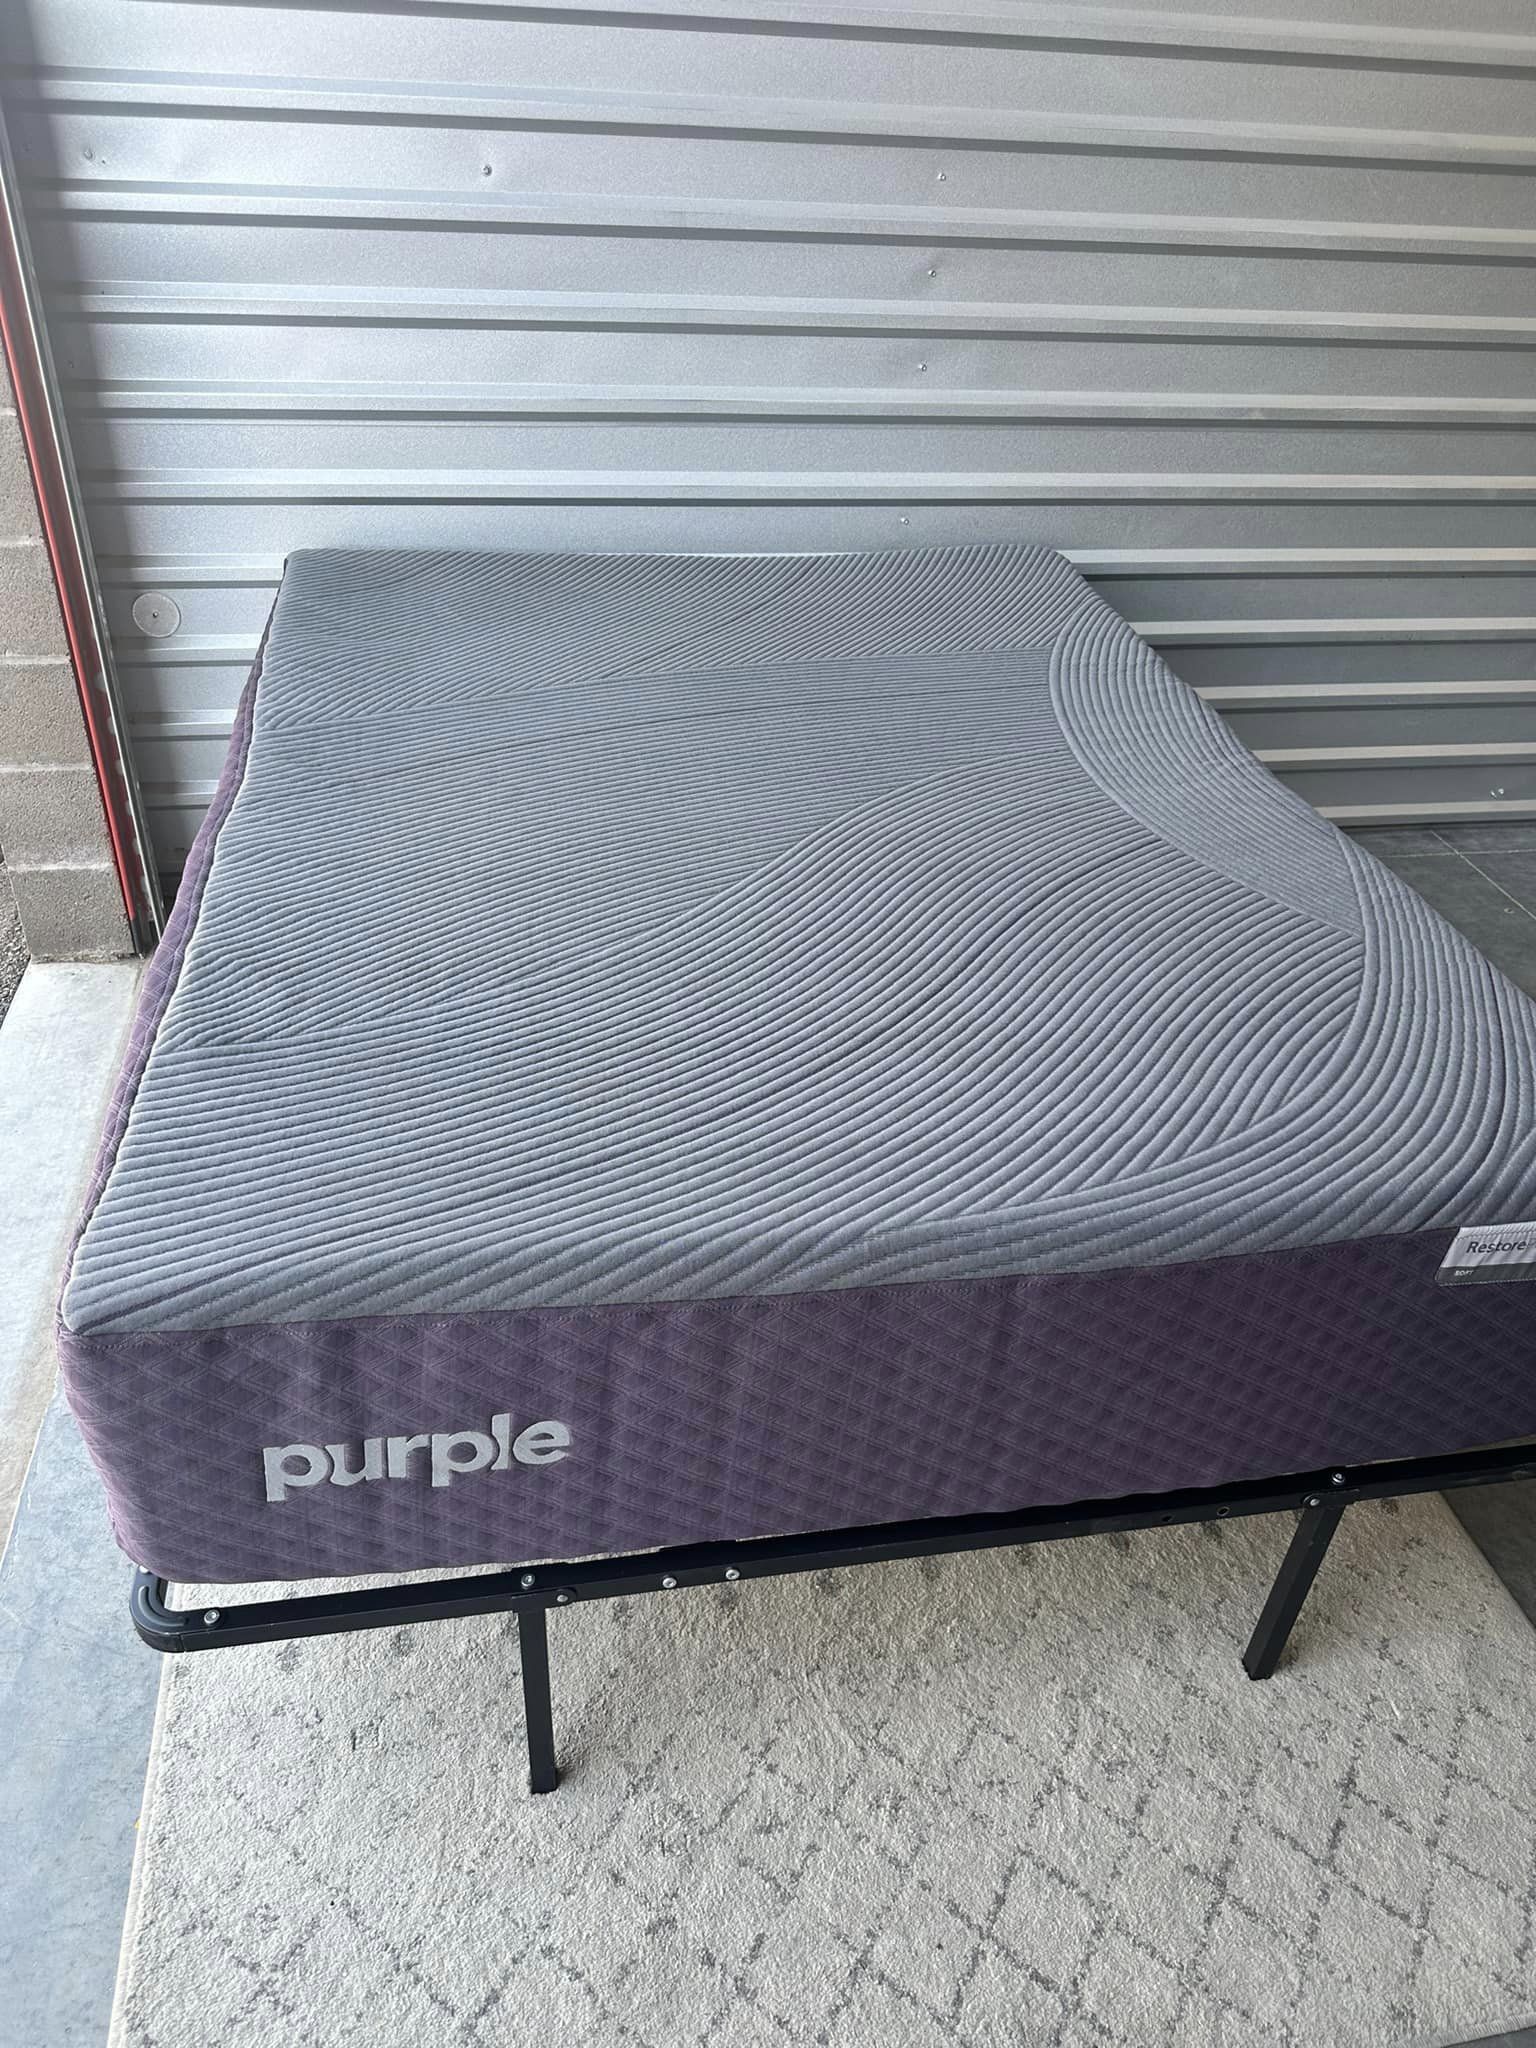 Purple Restore Plus Soft Queen Mattress